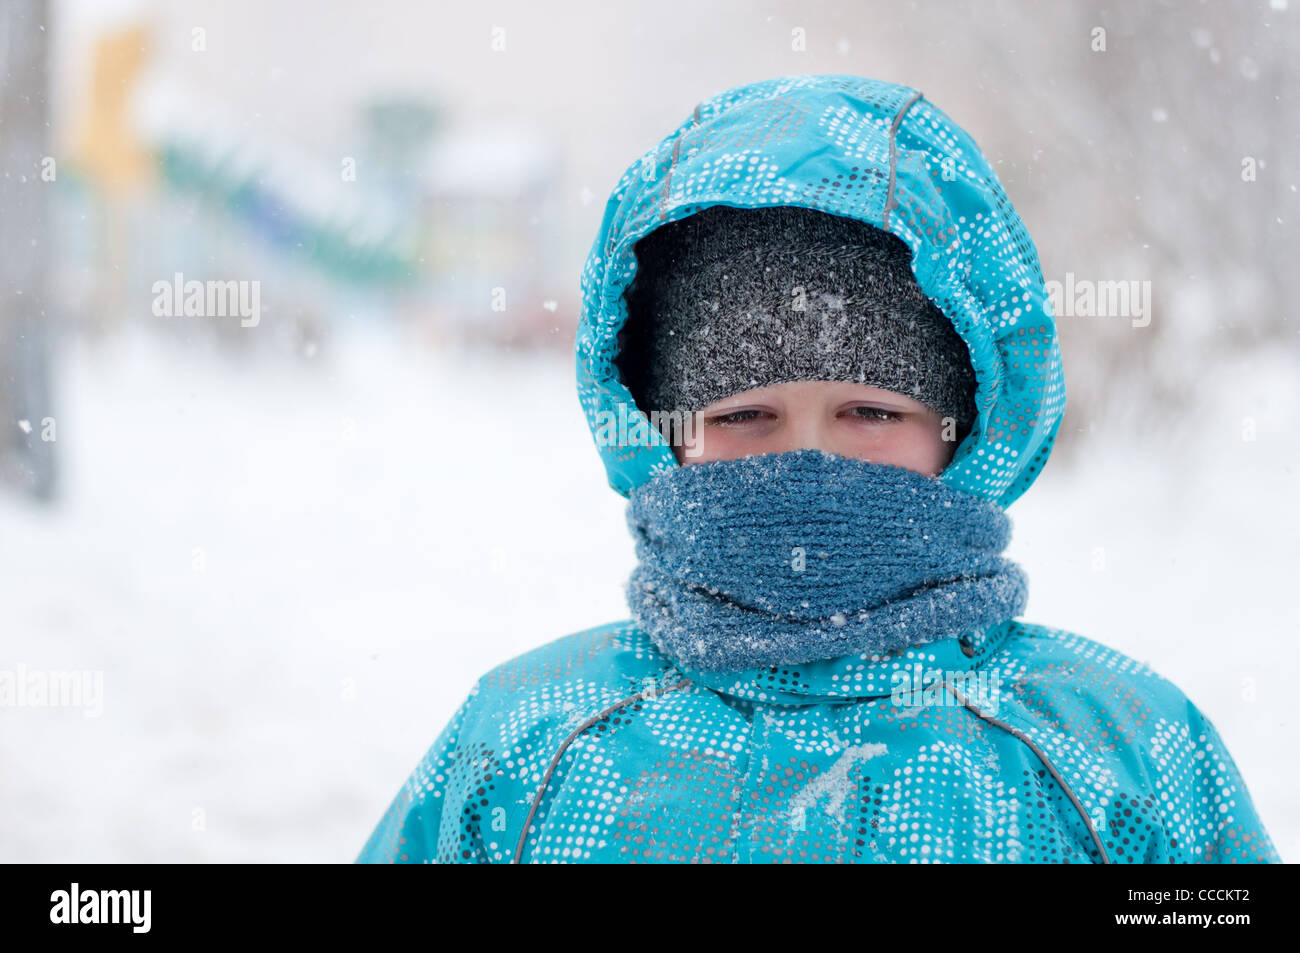 Bambino ritratto uno a otto anni abbigliamento invernale blizzard gelo della neve down jacket cofano sciarpa blu freddo giorno guarda a destra la Russia n. Foto Stock